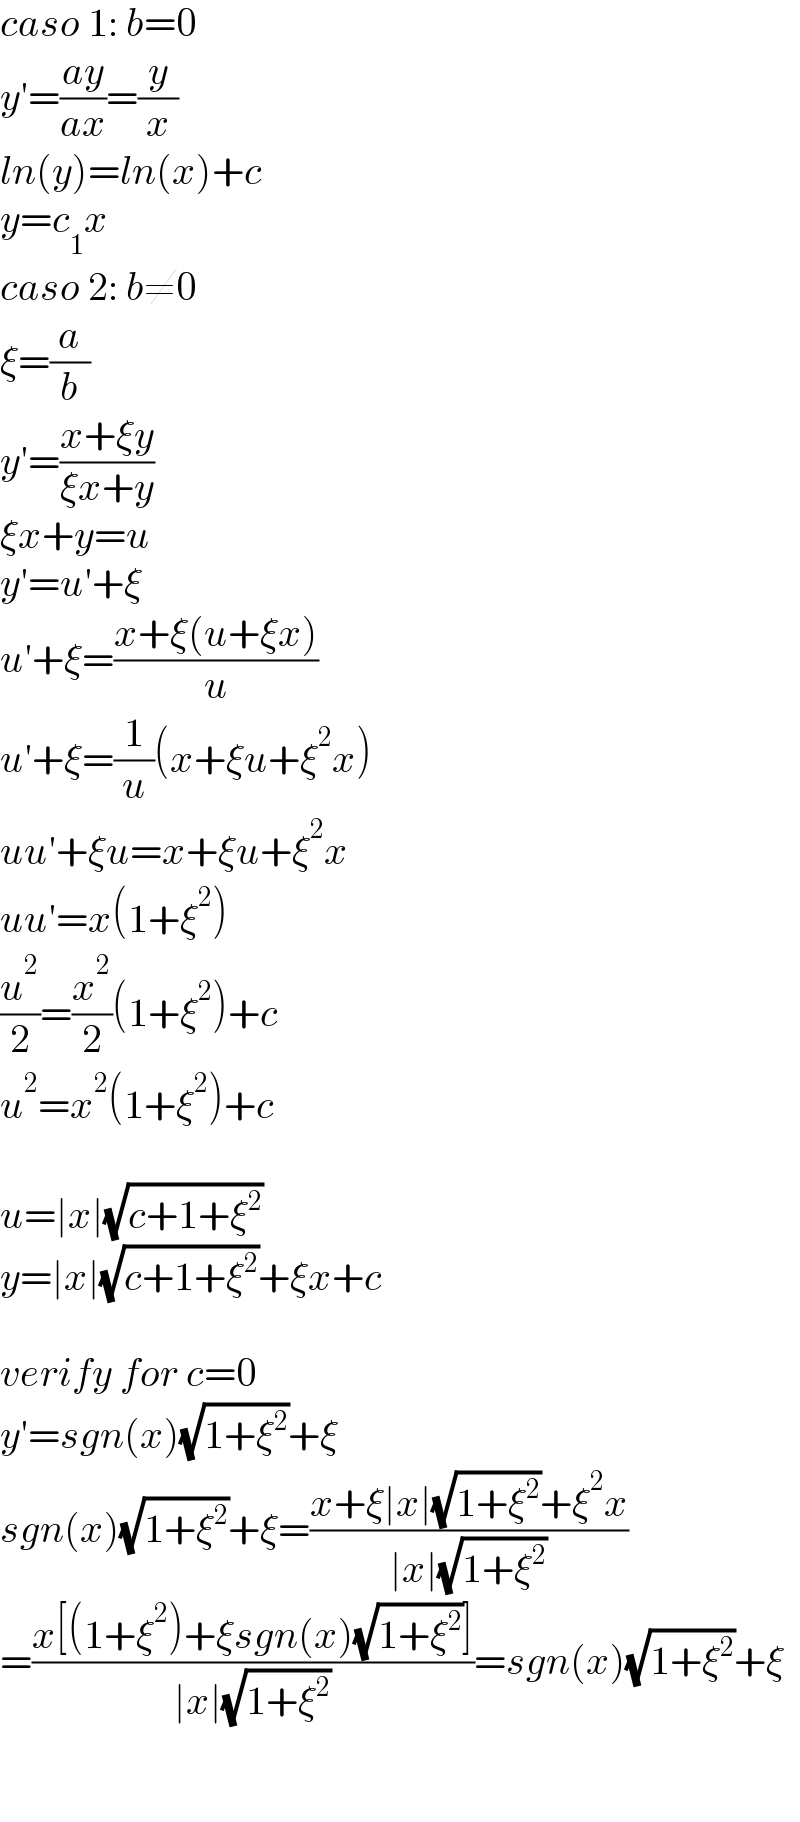 caso 1: b=0   y′=((ay)/(ax))=(y/x)  ln(y)=ln(x)+c  y=c_1 x  caso 2: b≠0  ξ=(a/b)  y′=((x+ξy)/(ξx+y))  ξx+y=u  y′=u′+ξ  u′+ξ=((x+ξ(u+ξx))/u)  u′+ξ=(1/u)(x+ξu+ξ^2 x)  uu′+ξu=x+ξu+ξ^2 x  uu′=x(1+ξ^2 )  (u^2 /2)=(x^2 /2)(1+ξ^2 )+c  u^2 =x^2 (1+ξ^2 )+c    u=∣x∣(√(c+1+ξ^2 ))  y=∣x∣(√(c+1+ξ^2 ))+ξx+c    verify for c=0  y′=sgn(x)(√(1+ξ^2 ))+ξ  sgn(x)(√(1+ξ^2 ))+ξ=((x+ξ∣x∣(√(1+ξ^2 ))+ξ^2 x)/(∣x∣(√(1+ξ^2 ))))  =((x[(1+ξ^2 )+ξsgn(x)(√(1+ξ^2 ))])/(∣x∣(√(1+ξ^2 ))))=sgn(x)(√(1+ξ^2 ))+ξ      